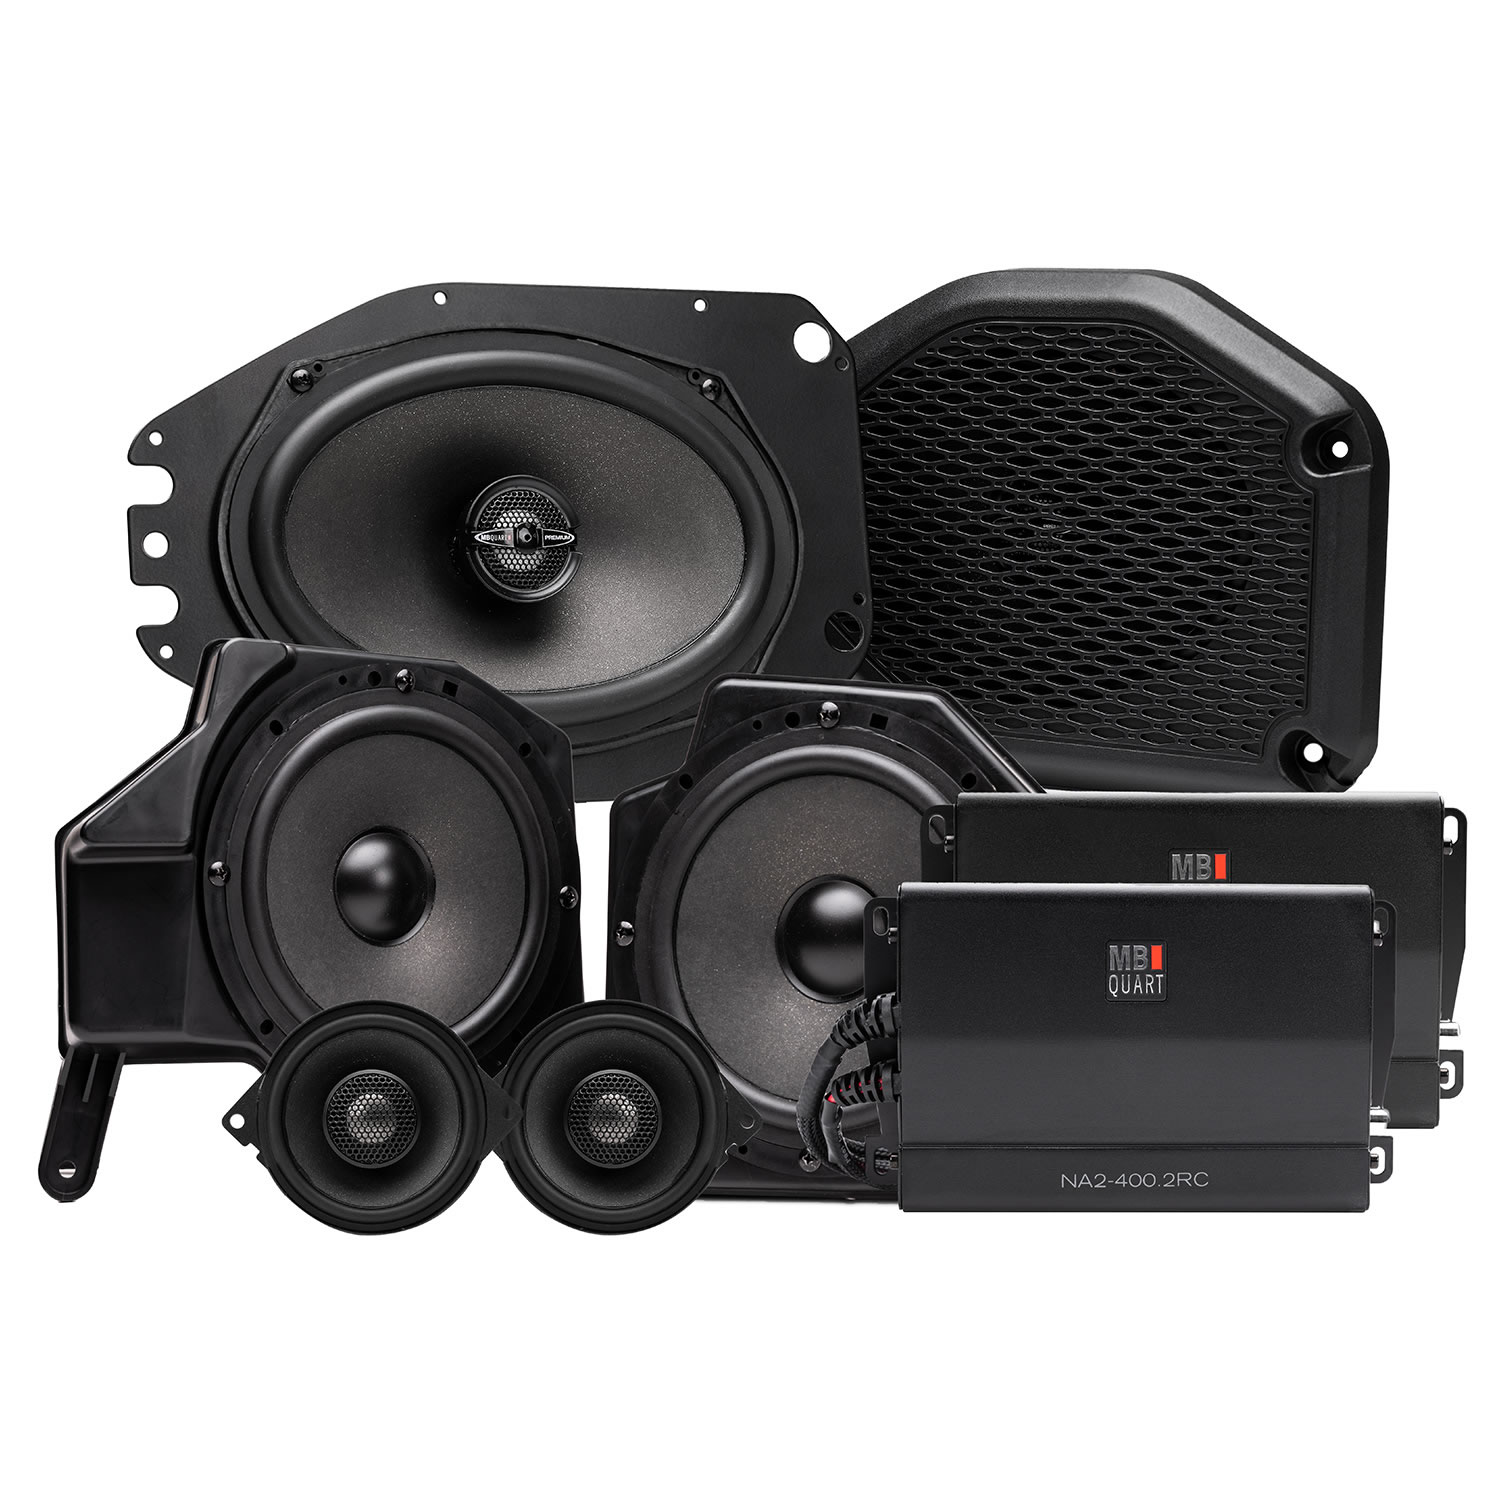 Top 45+ imagen jeep wrangler speaker upgrade